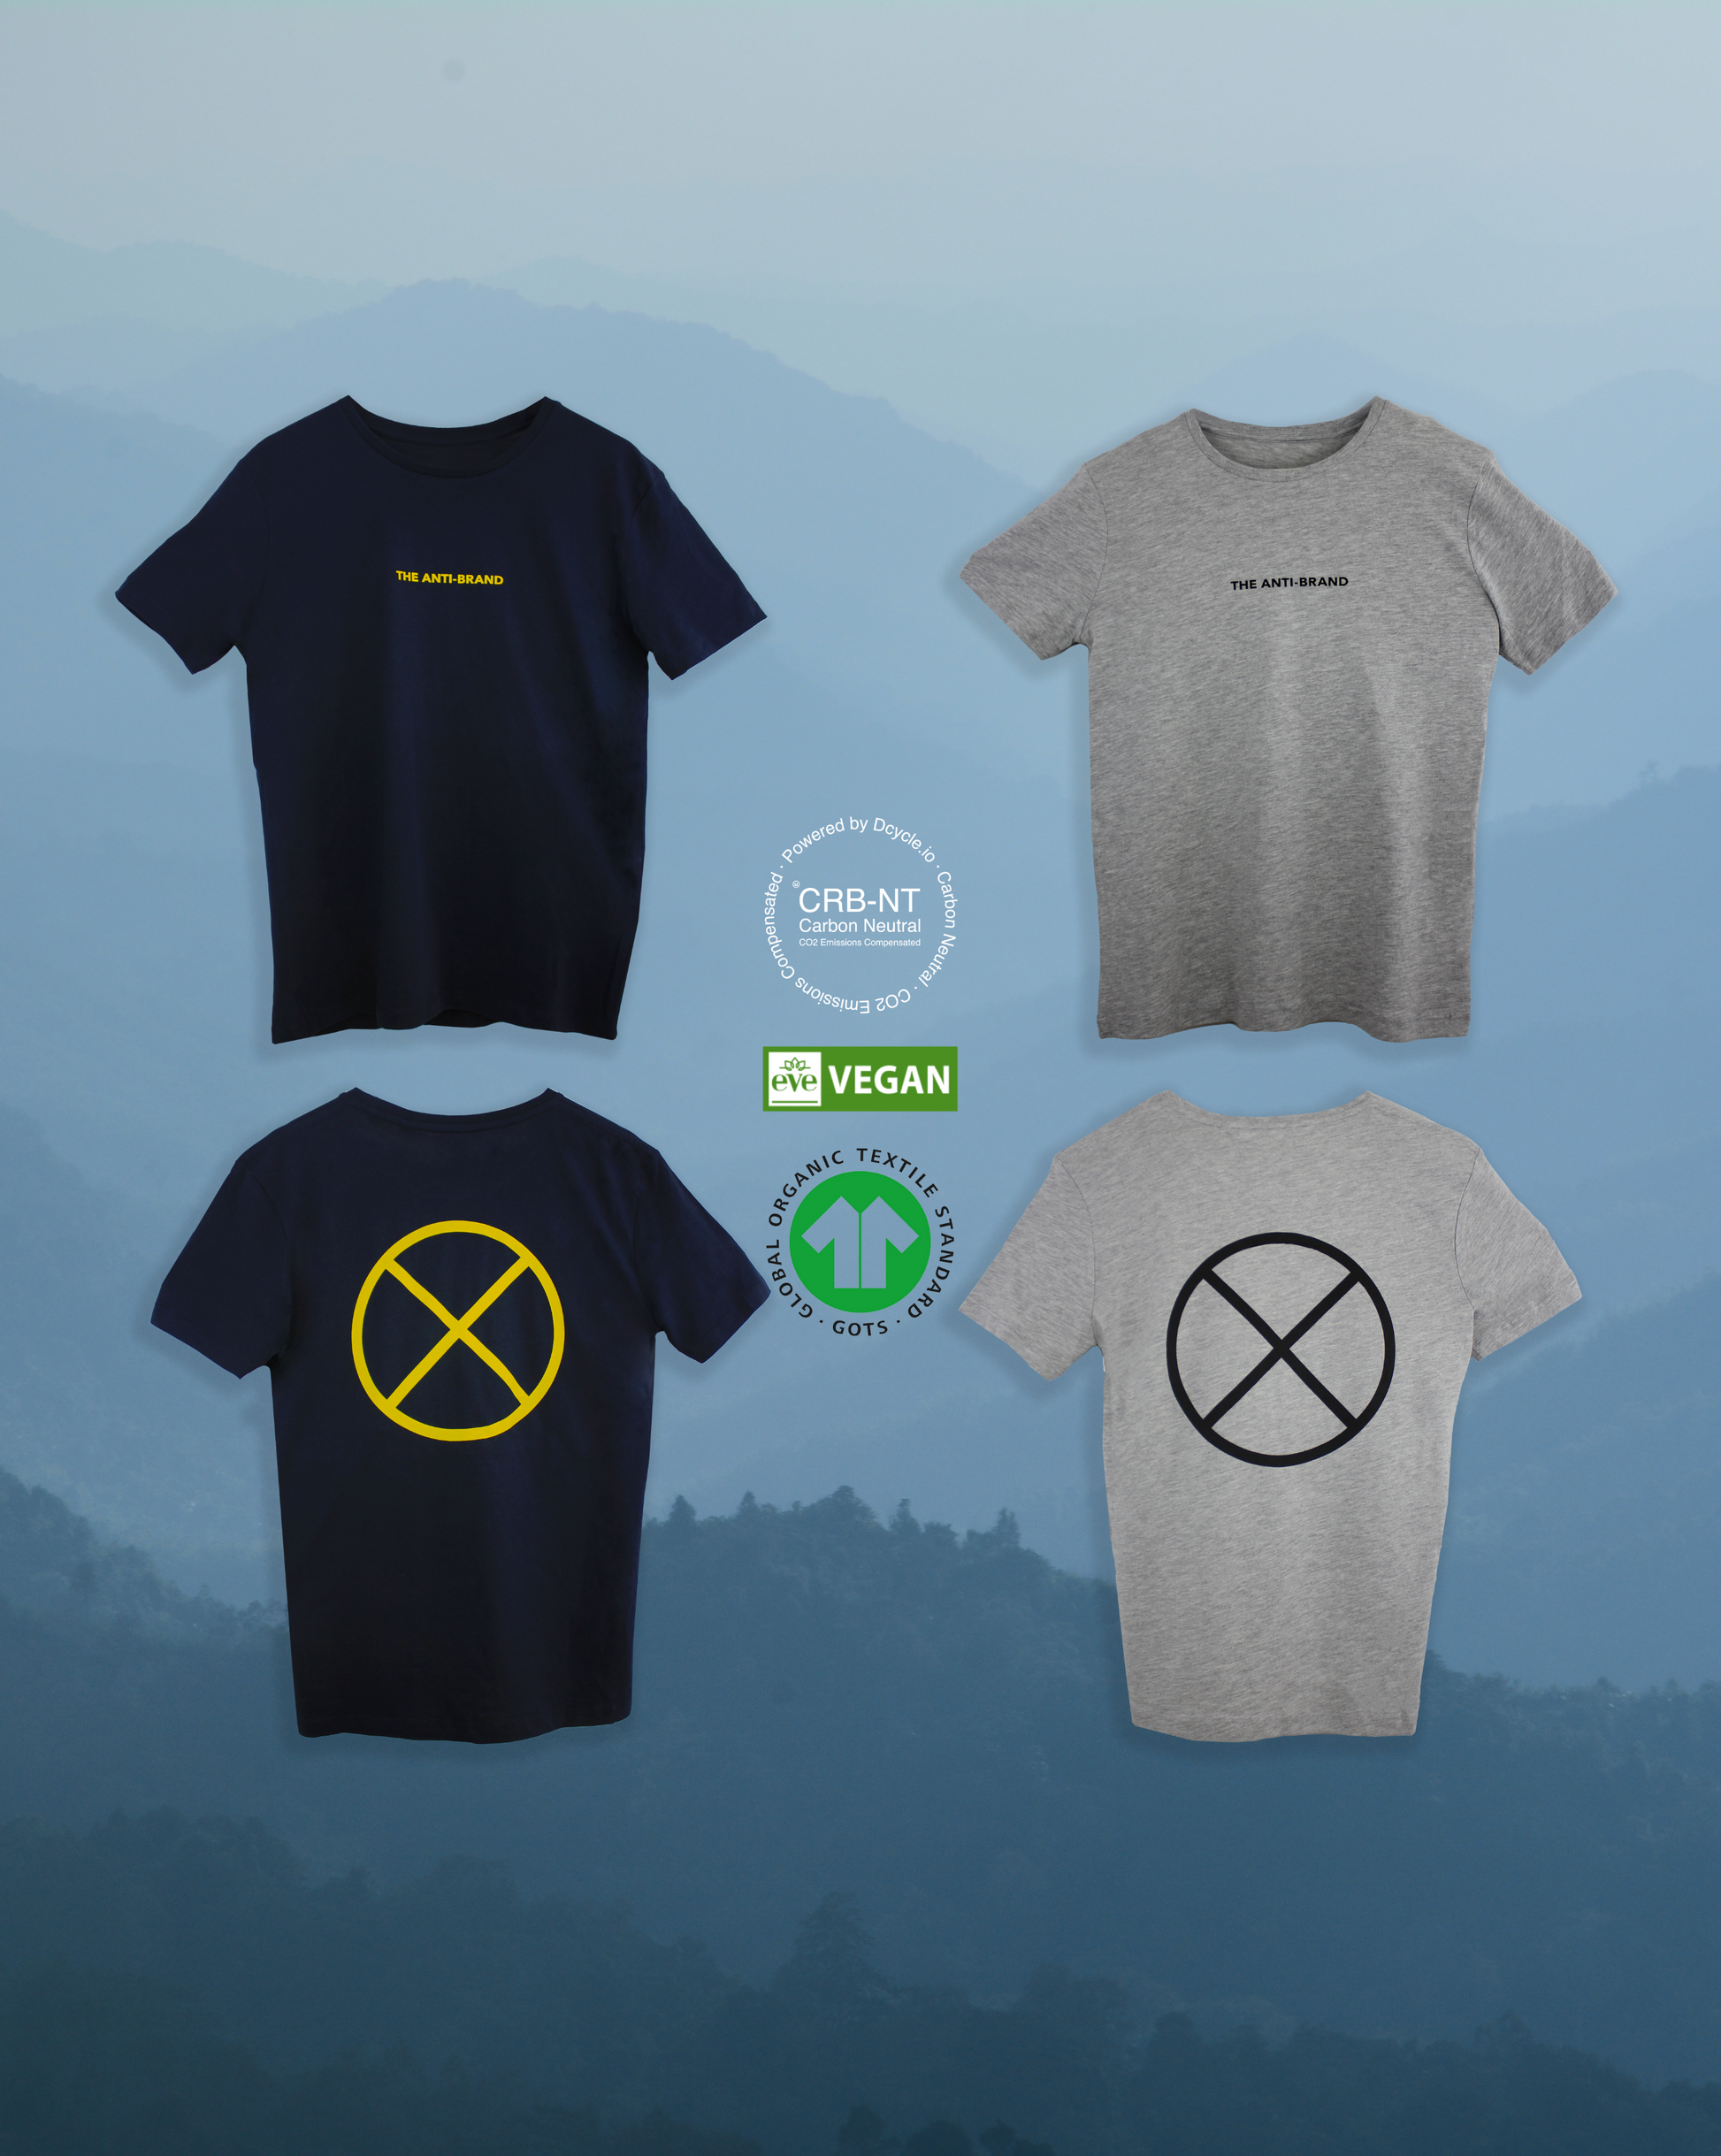 Camiseta · 100% algodón orgánico · Light Oxford [EDICIÓN LIMITADA] (6789058822221)